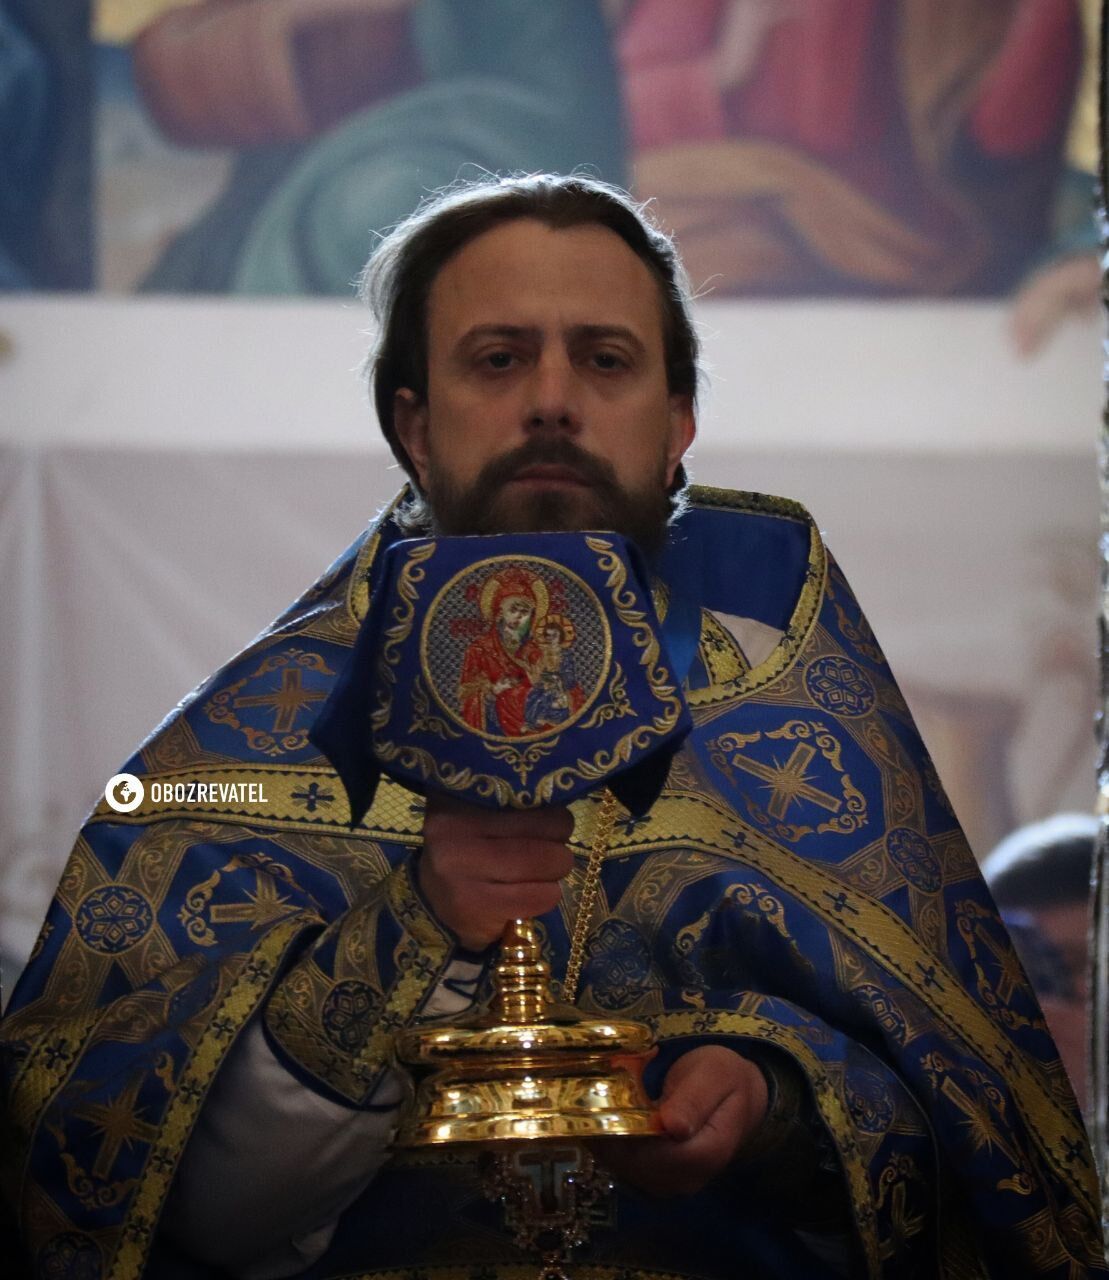 ПЦУ на Благовещение совершает литургию в Успенском соборе Киево-Печерской лавры. Фото и видео